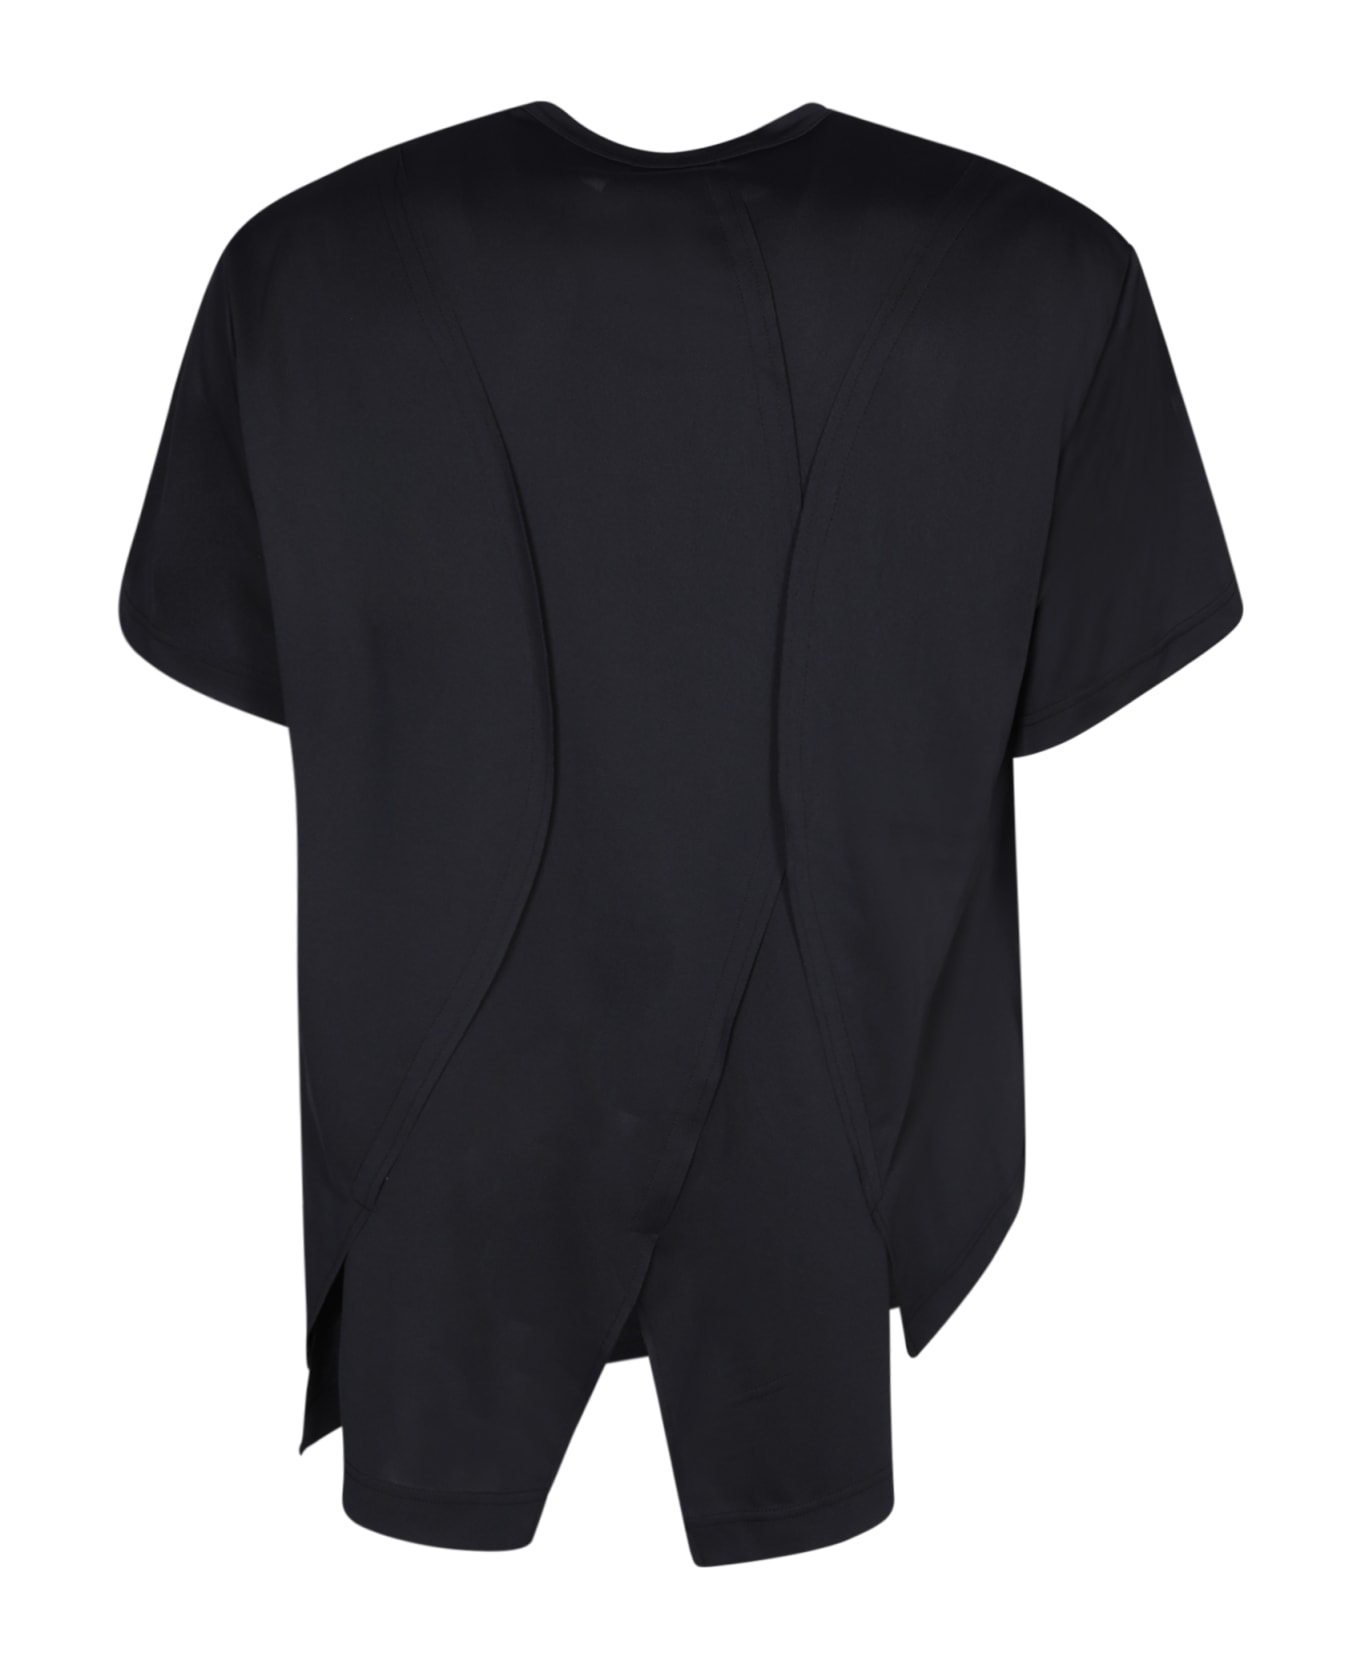 Comme Des Garçons Homme Plus Black Cotton T-shirt - Black シャツ